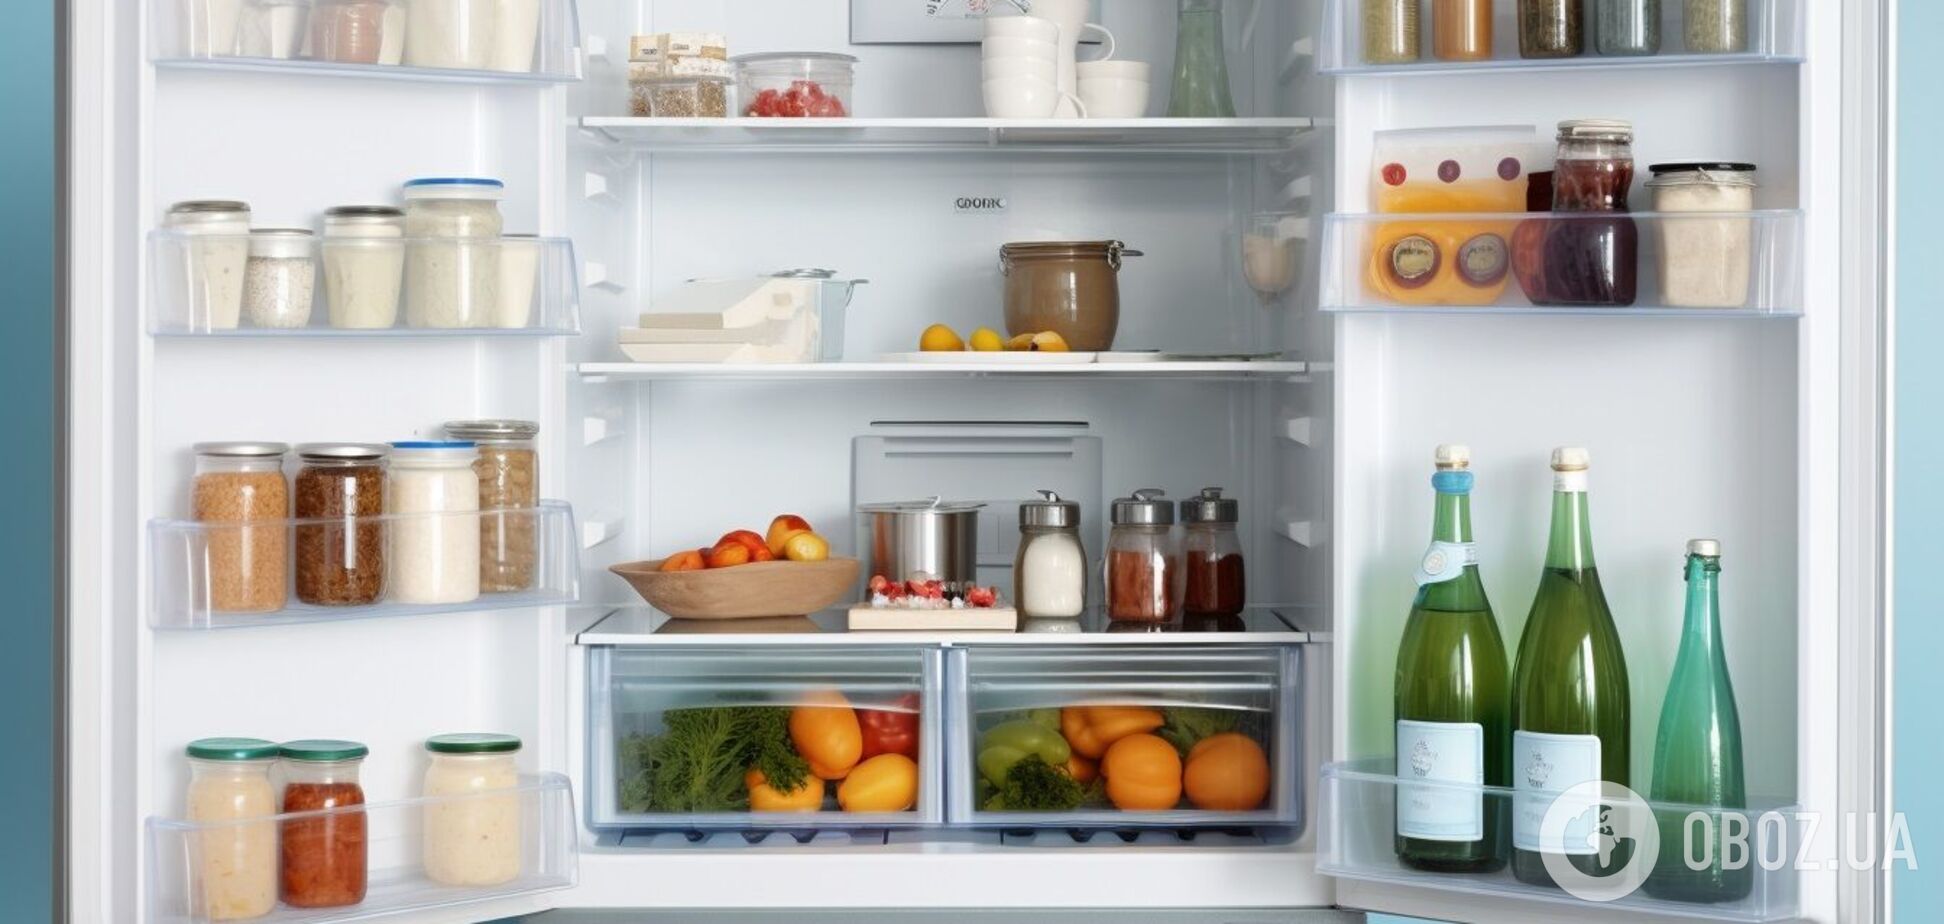 Еда больше не будет портиться: 5 правил для поддержания холодильника в чистоте